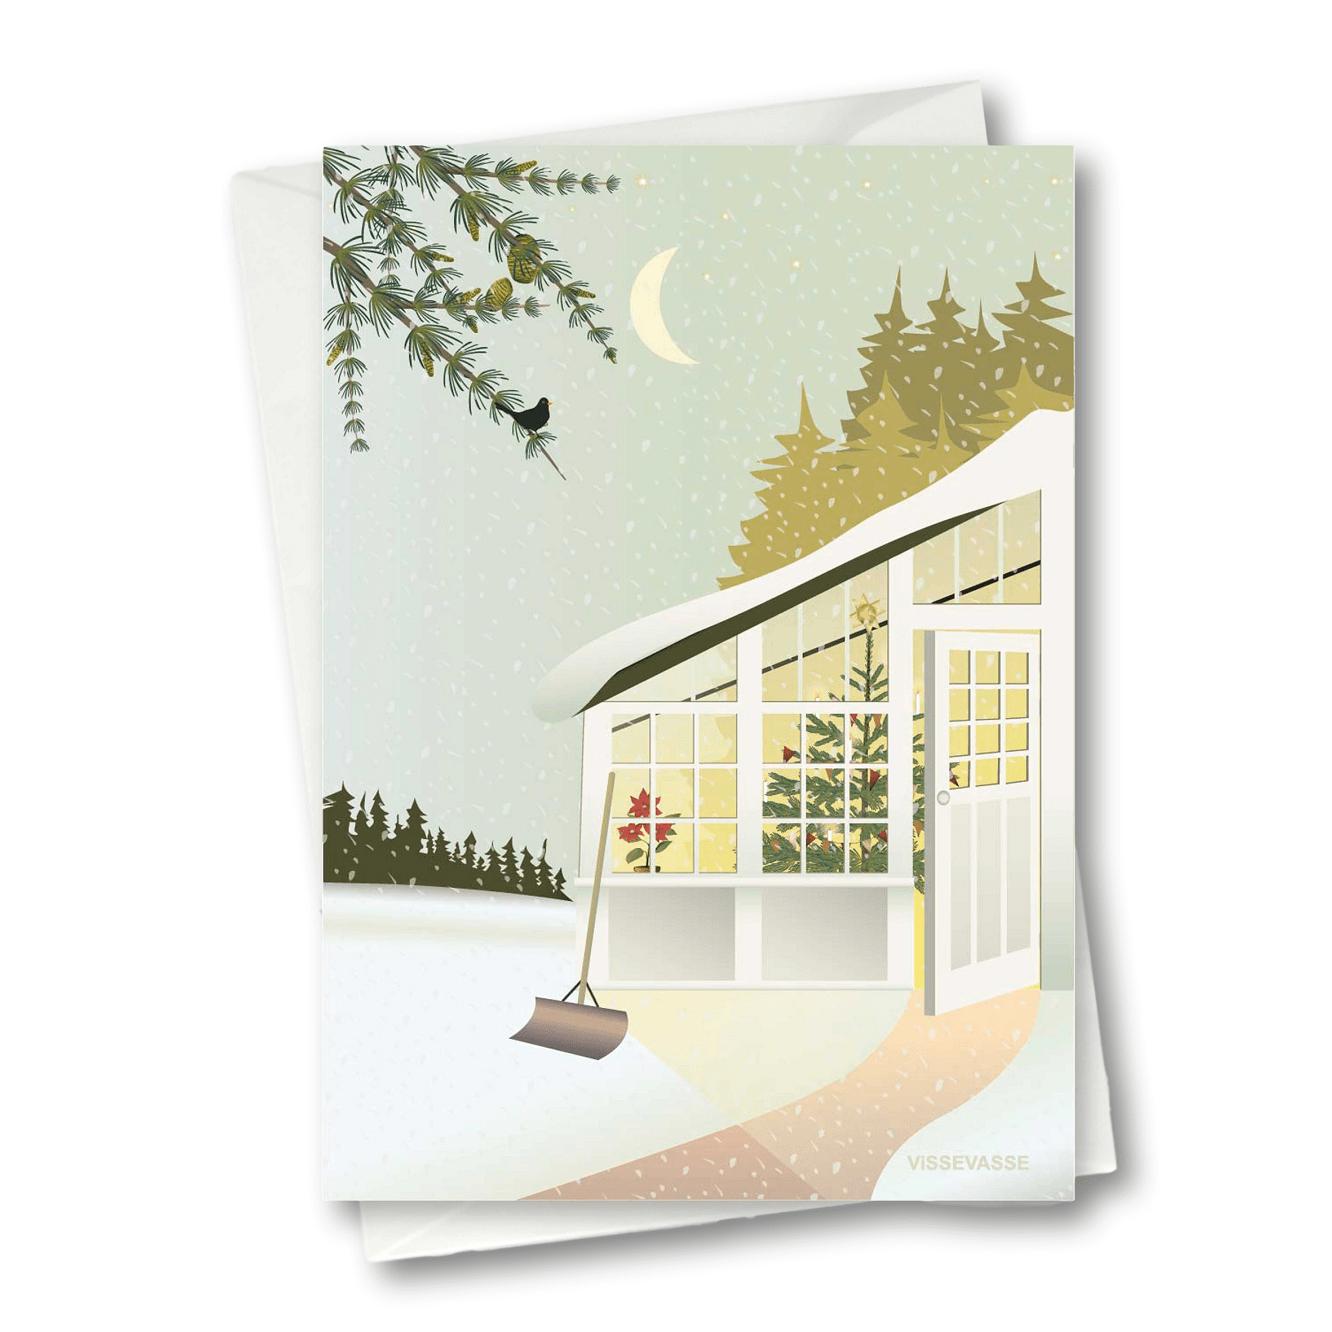 Navidad Vissevasse en la tarjeta de felicitación del invernadero, 10,5x15 cm